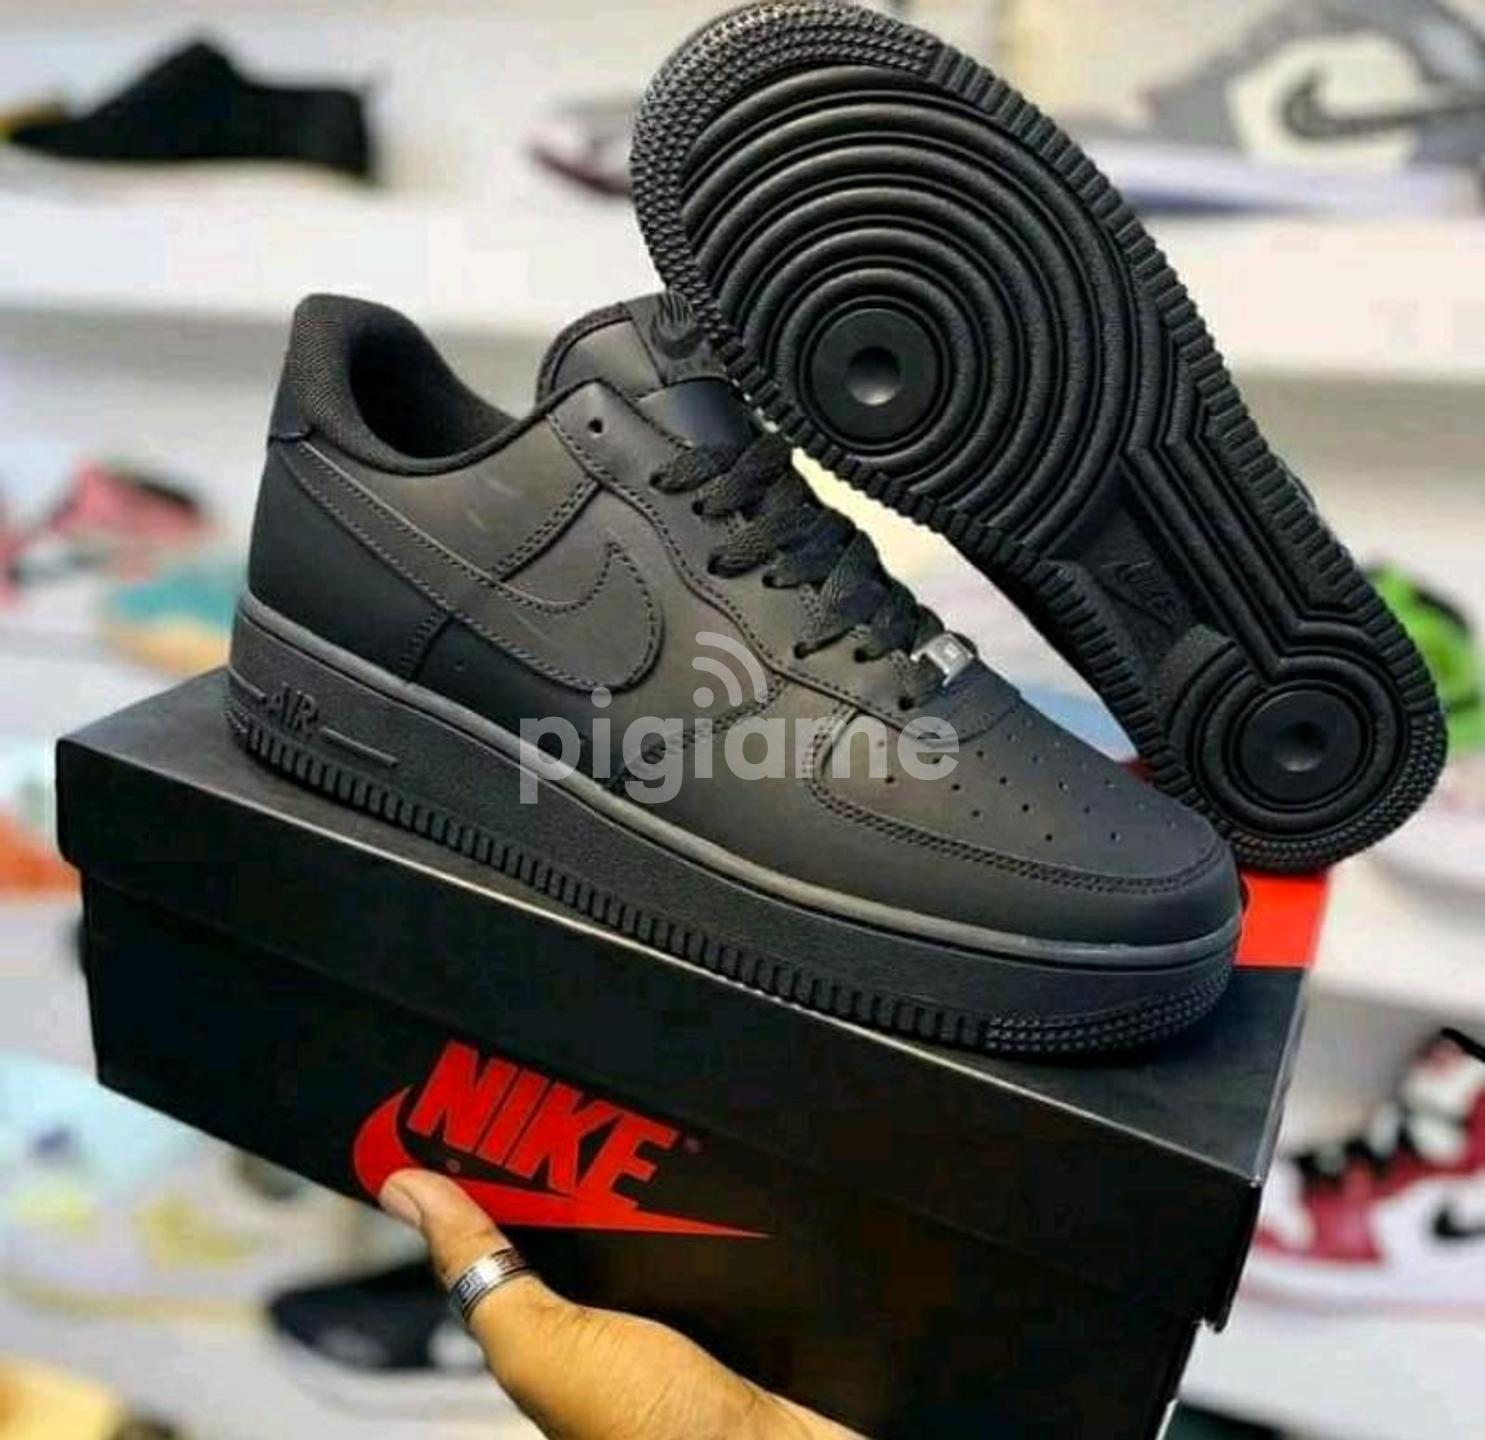 Designer Nike Air Force One Sneakers in Nairobi CBD | PigiaMe